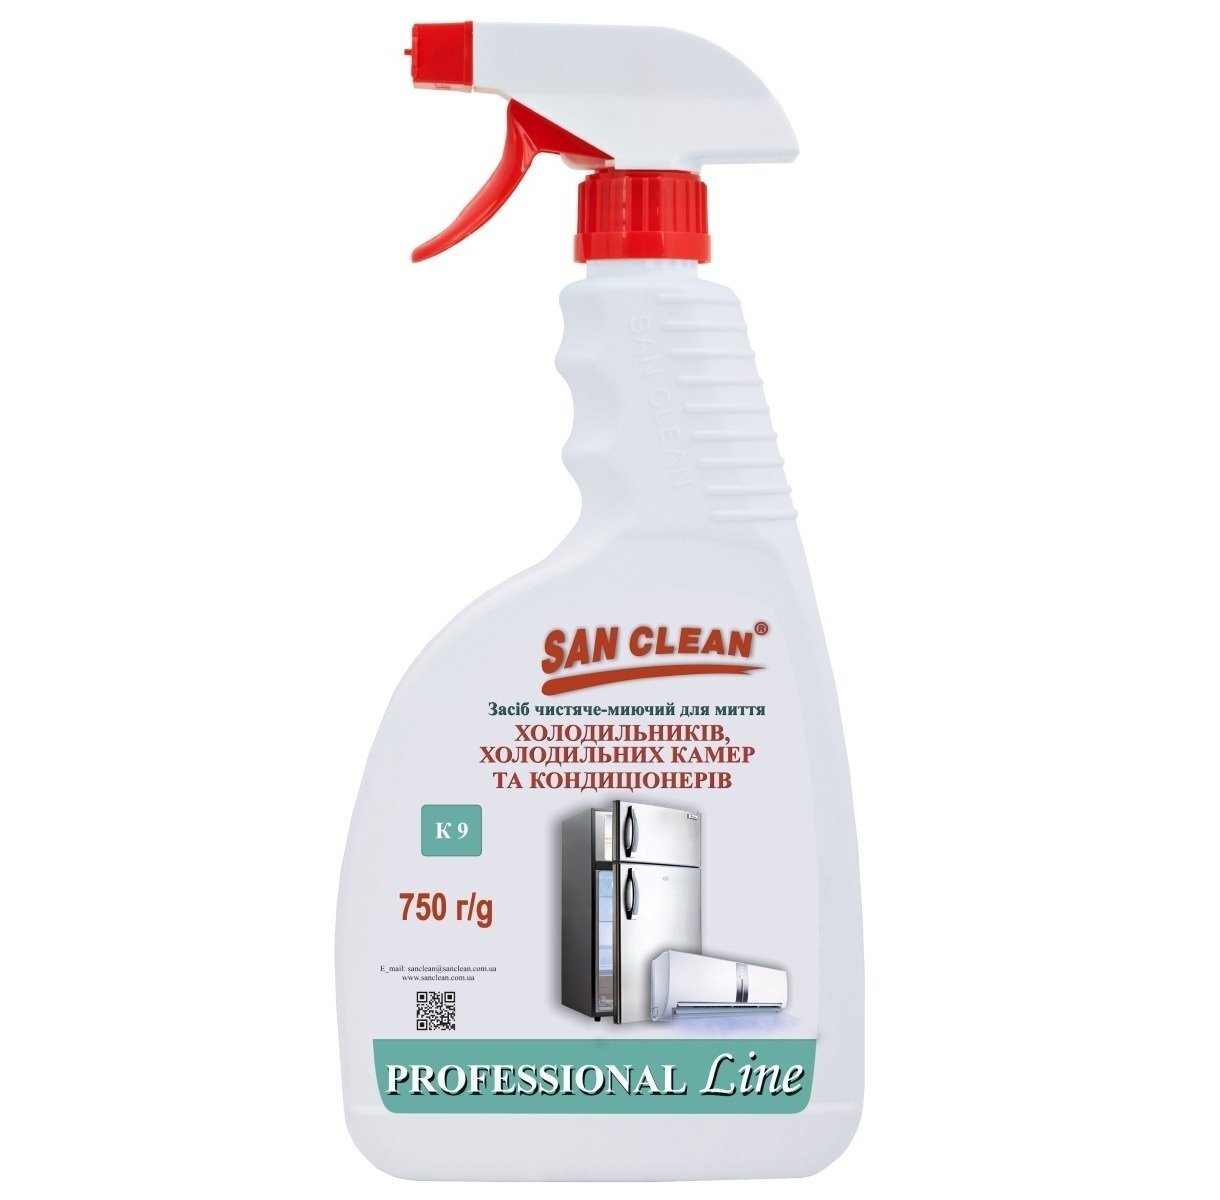 San Clean для холодильников и кондиционеров 750г распылитель фото 